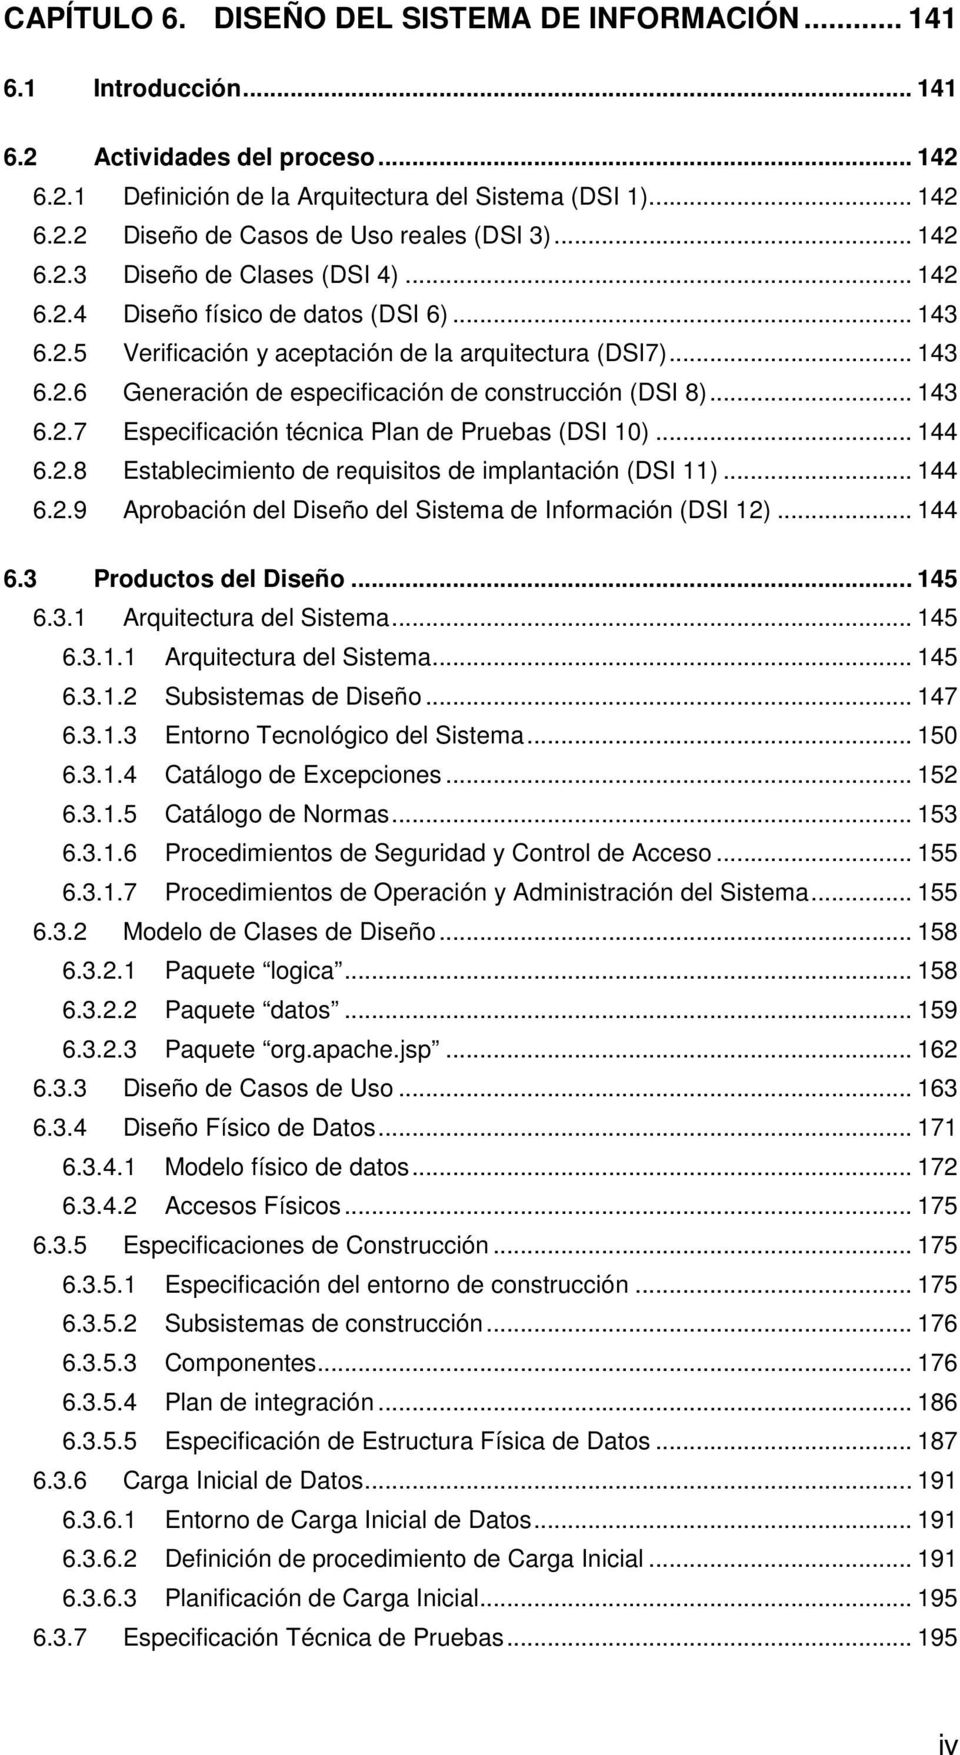 .. 143 6.2.7 Especificación técnica Plan de Pruebas (DSI 10)... 144 6.2.8 Establecimiento de requisitos de implantación (DSI 11)... 144 6.2.9 Aprobación del Diseño del Sistema de Información (DSI 12).